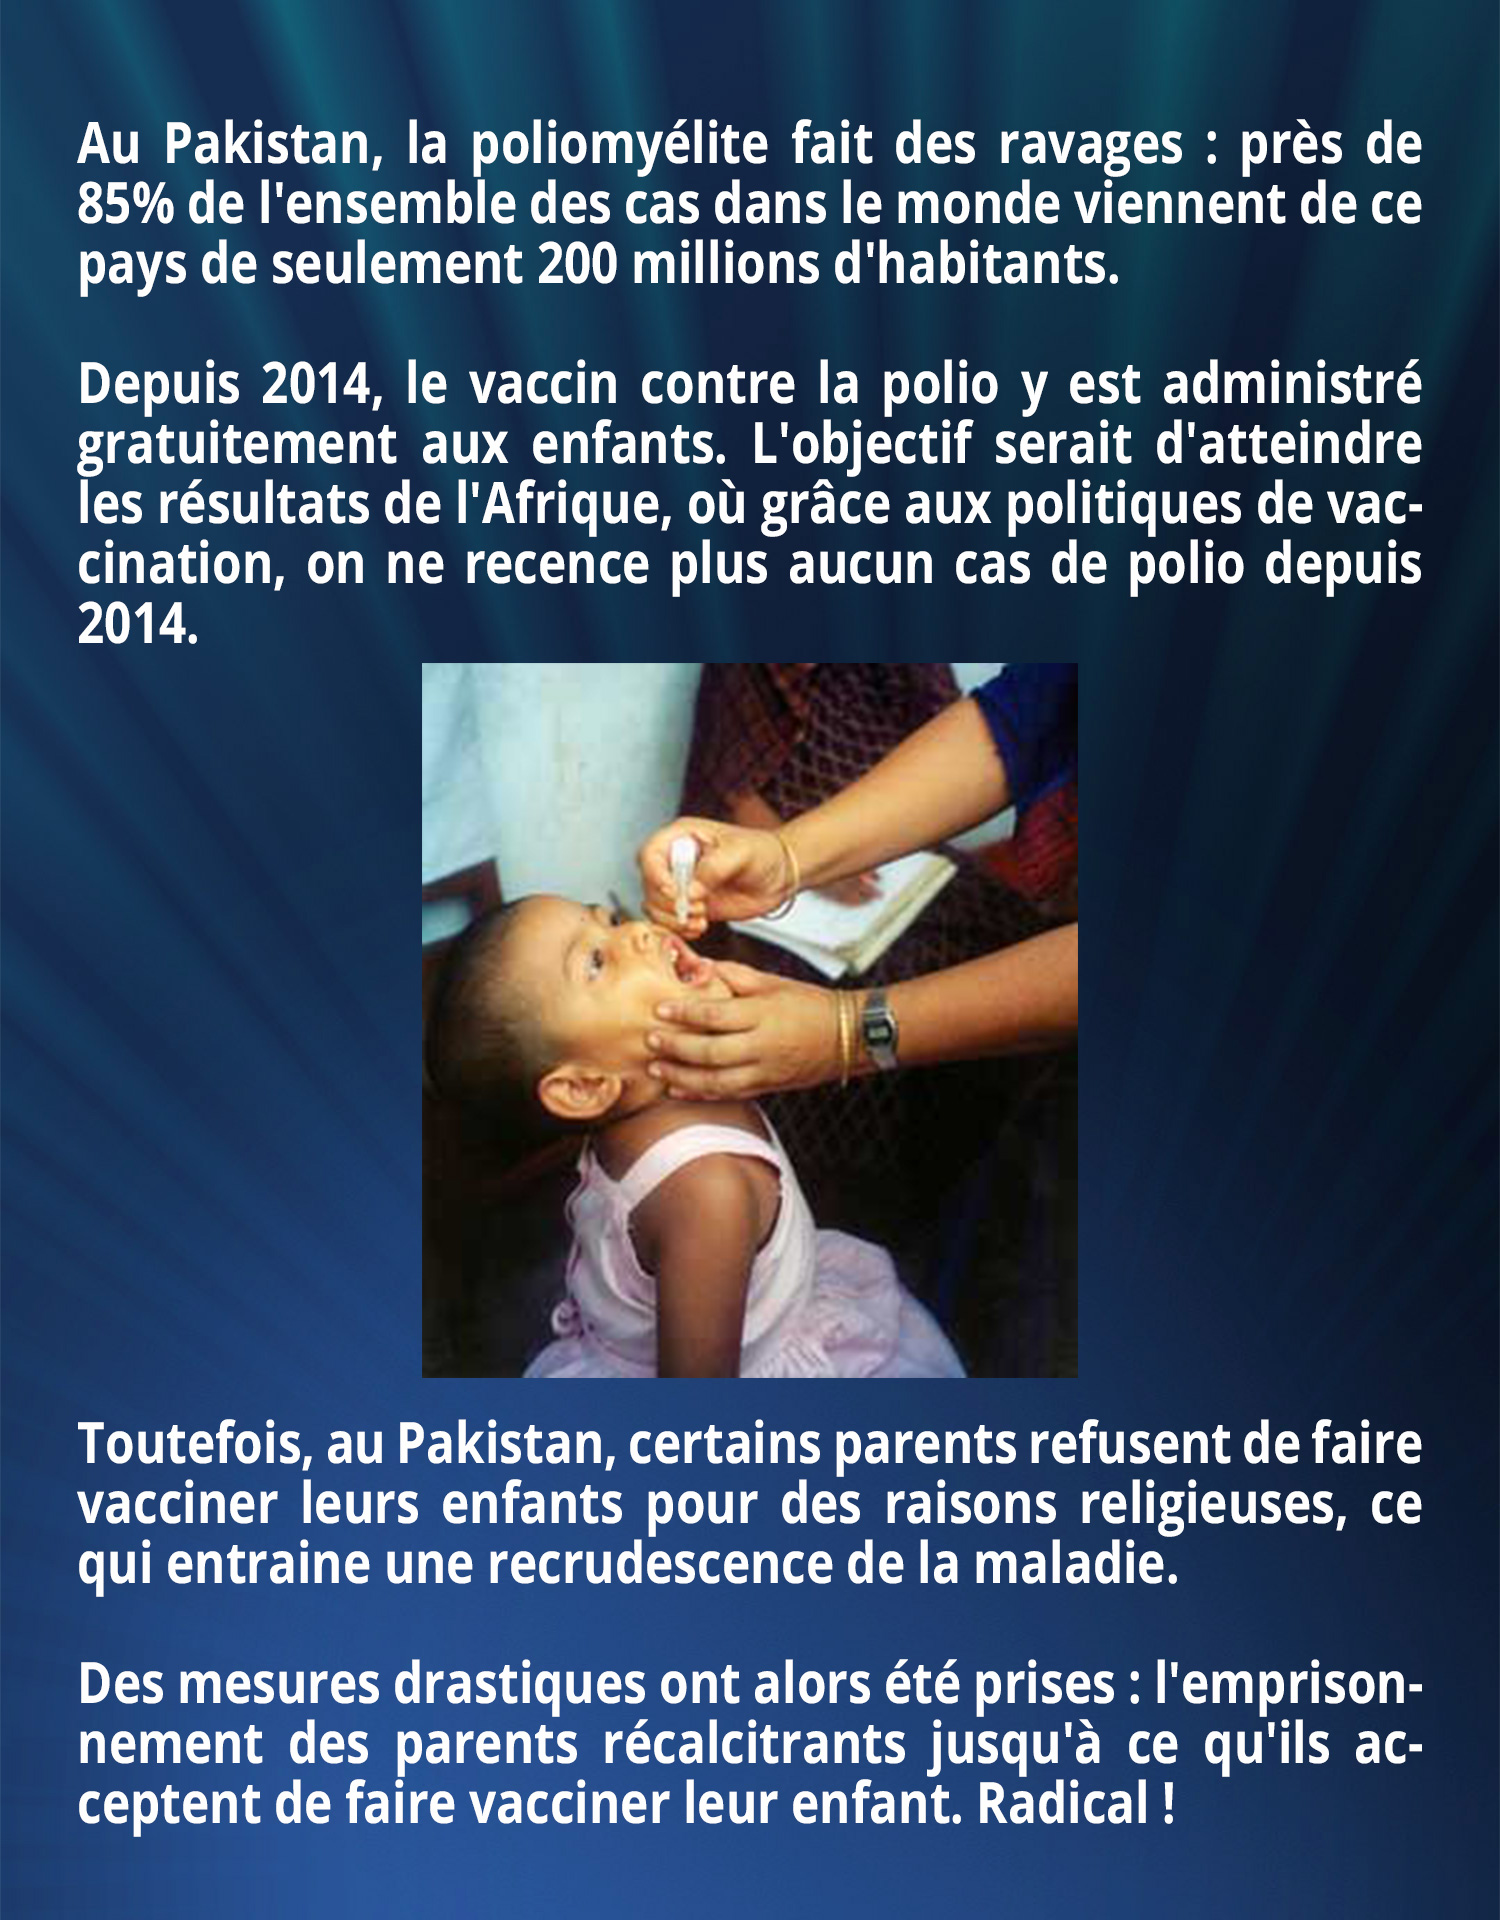 Au Pakistan, la poliomyélite fait des ravages : près de 85% de l'ensemble des cas dans le monde viennent de ce pays de seulement 200 millions d'habitants.
Depuis 2014, le vaccin contre la polio y est administré gratuitement aux enfants. L'objectif serait d'atteindre les résultats de l'Afrique, où grâce aux politiques de vaccination, on ne recence plus aucun cas de polio depuis 2014. Toutefois, au Pakistan, certains parents refusent de faire vacciner leurs enfants pour des raisons religieuses, ce qui entraine une recrudescence de la maladie. Des mesures drastiques ont alors été prises : l'emprisonnement des parents récalcitrants jusqu'à ce qu'ils acceptent de faire vacciner leur enfant. Radical !